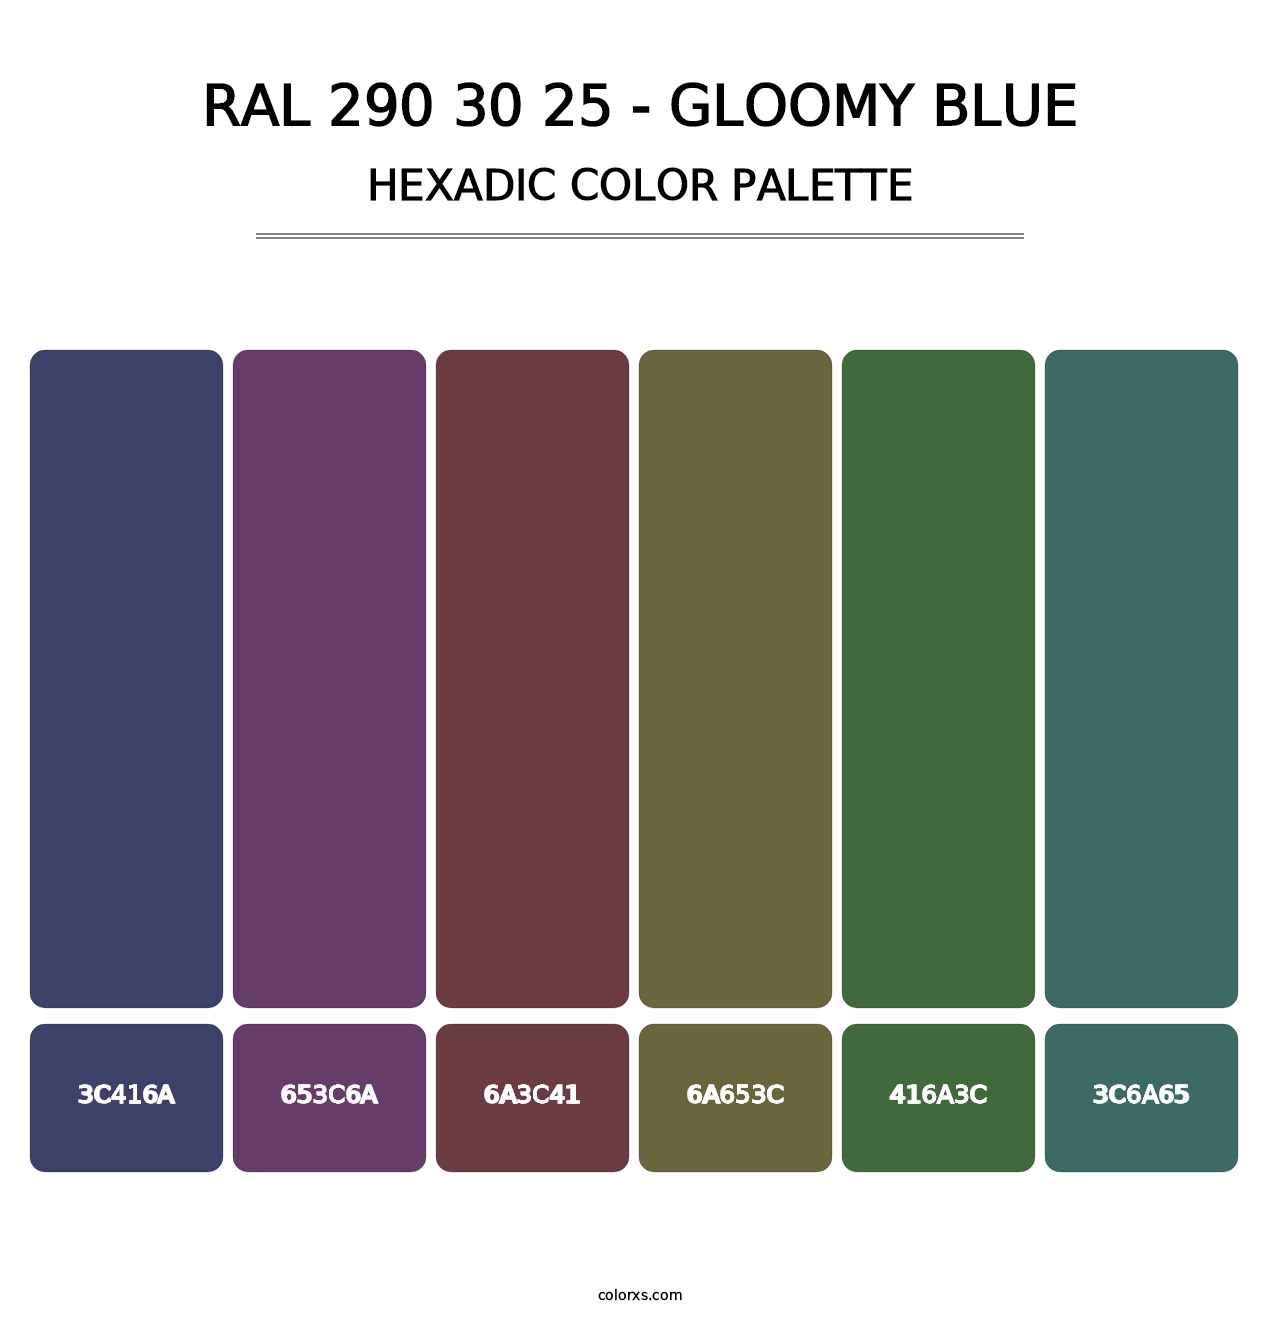 RAL 290 30 25 - Gloomy Blue - Hexadic Color Palette